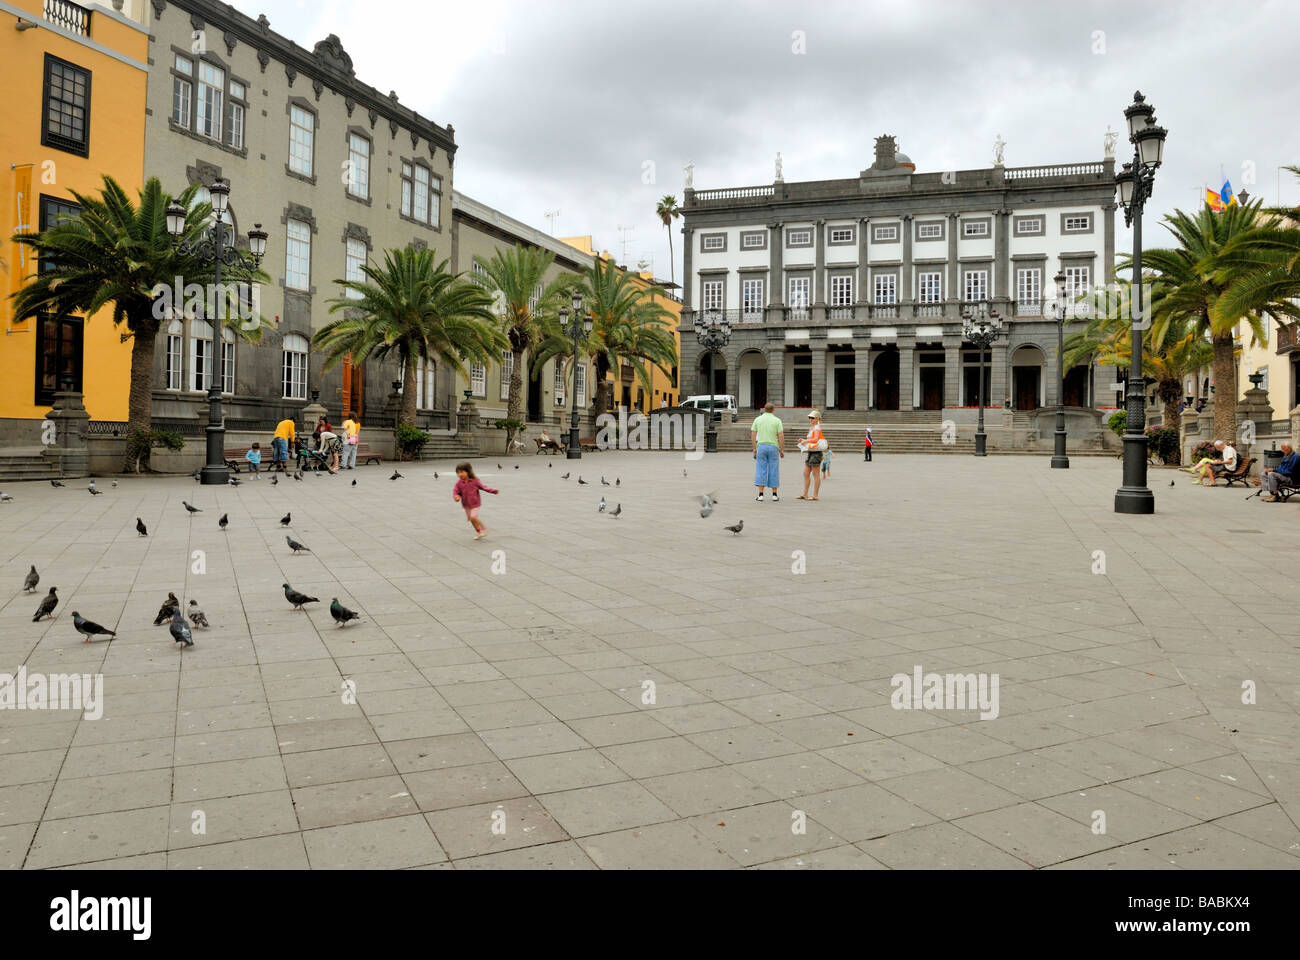 Ein schöner Blick über die Plaza de Santa Ana, die Casa Consistorial, das Rathaus, in alten und eleganten Viertel Vegueta. Las Pal Stockfoto